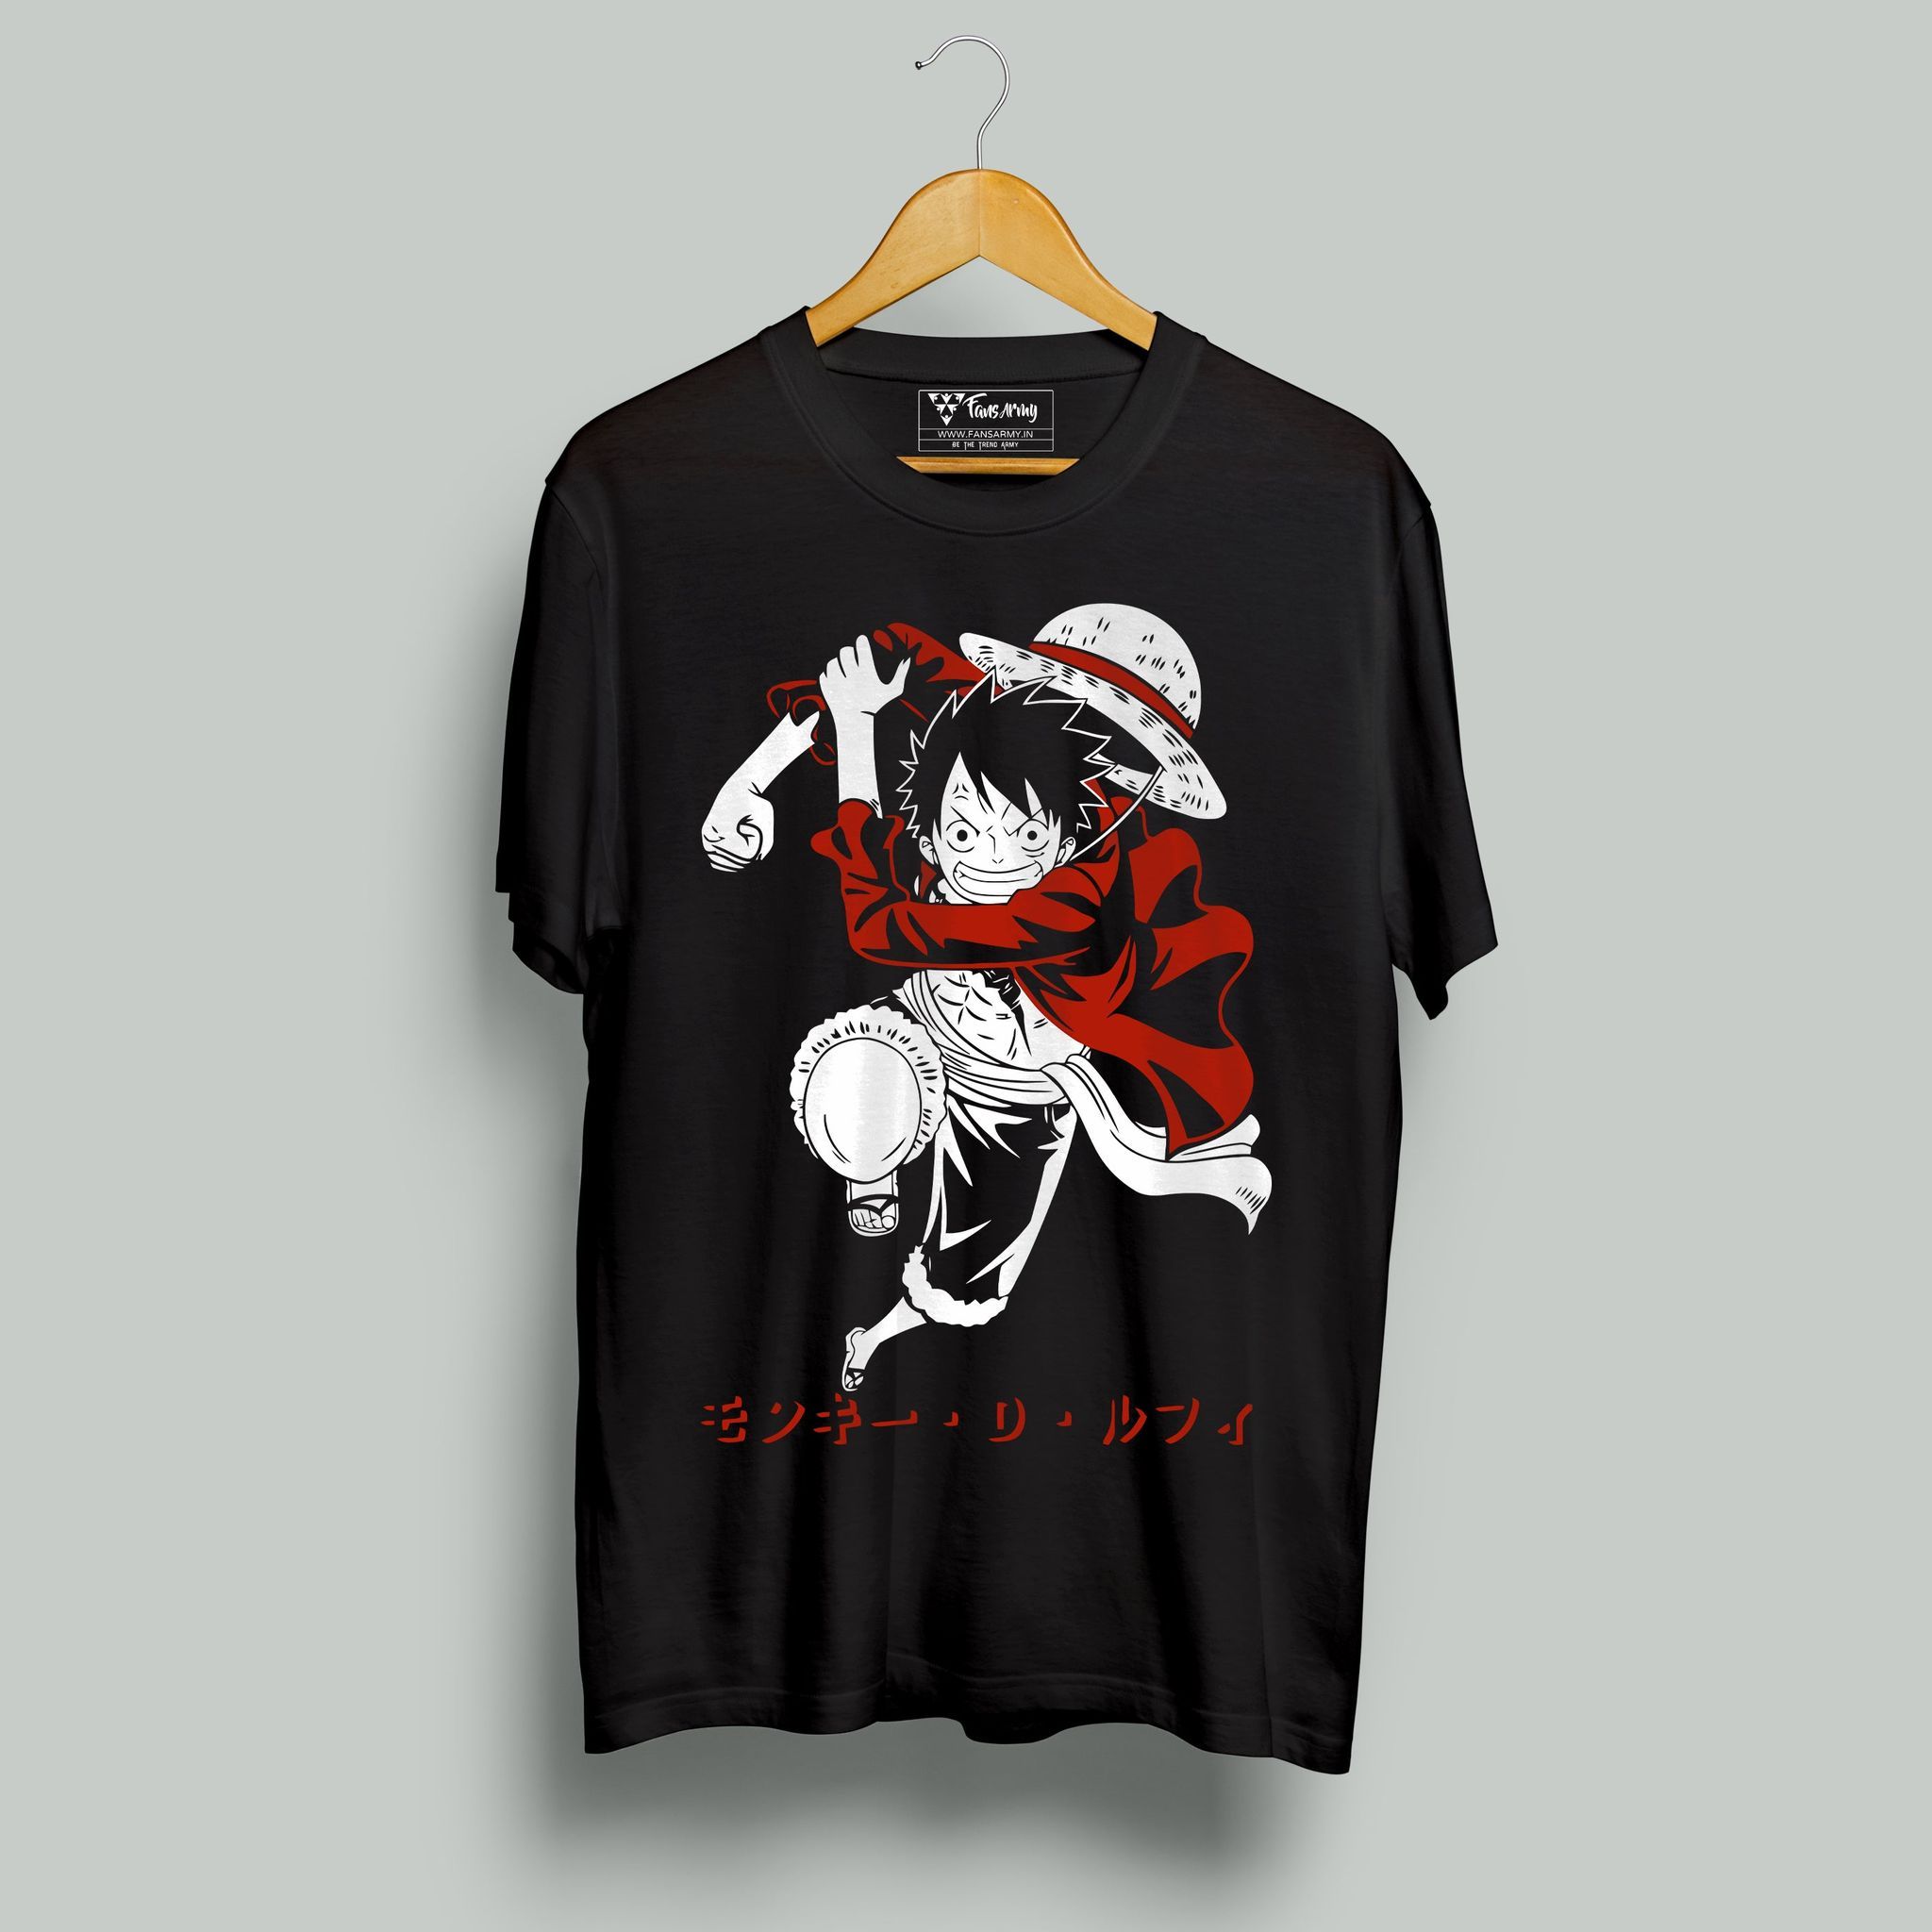 FANSARMY One Piece T-shirt - Monkey D Luffy T-shirt